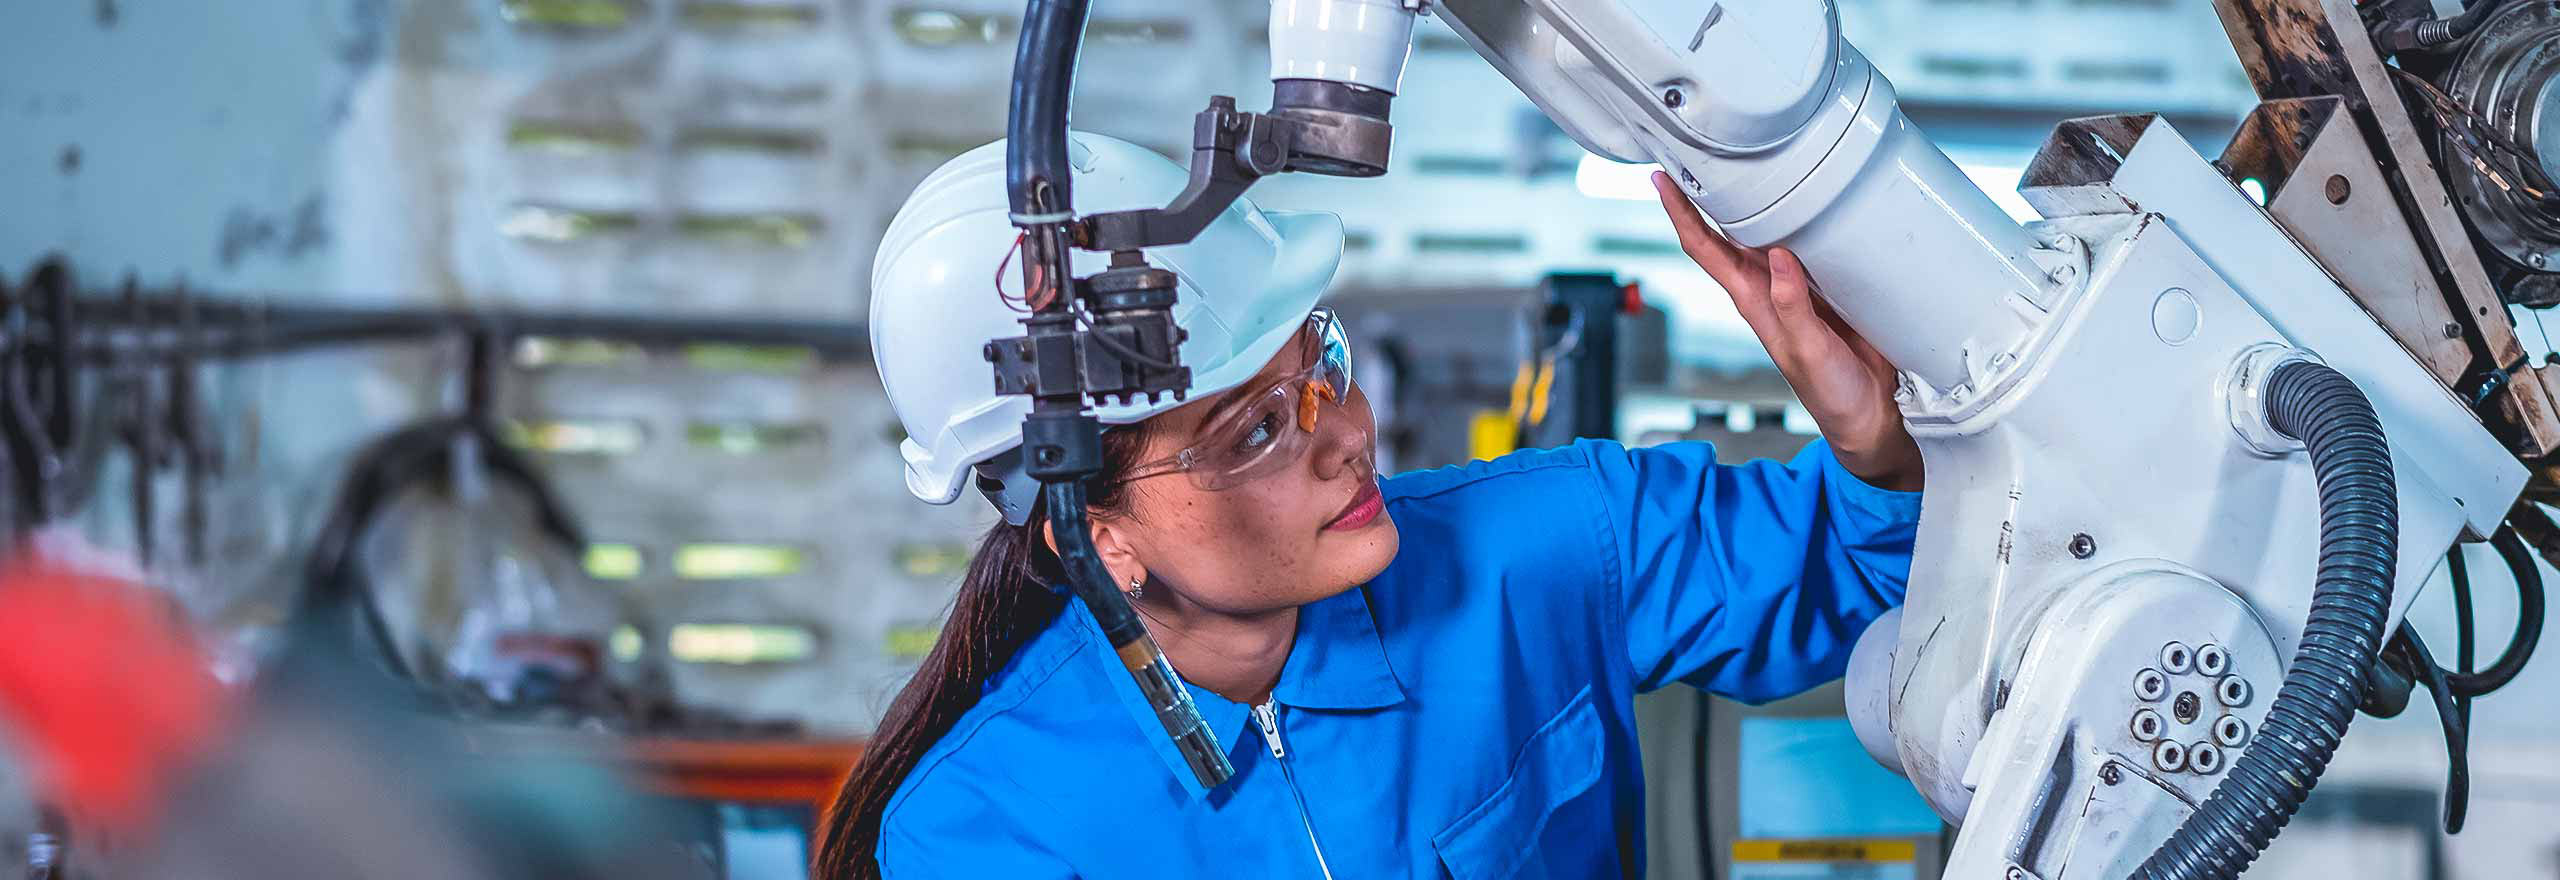 Una trabajadora de la fábrica sostiene una tableta y revisa parte de la maquinaria robótica en el área del lugar de trabajo